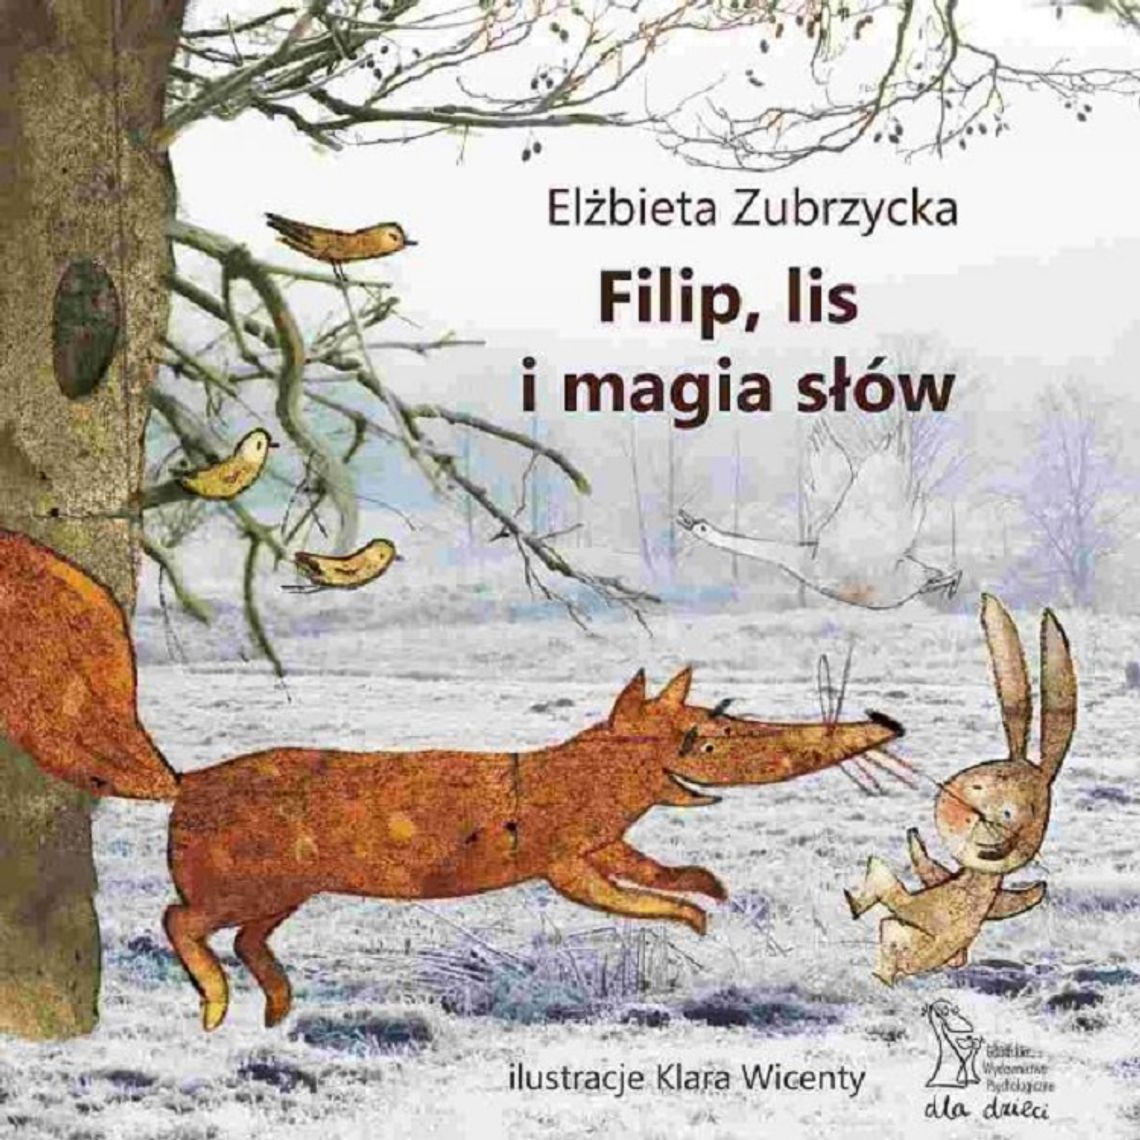 Zubrzycka Elżbieta "Filip, lis i magia słów"; wyd. GWP 